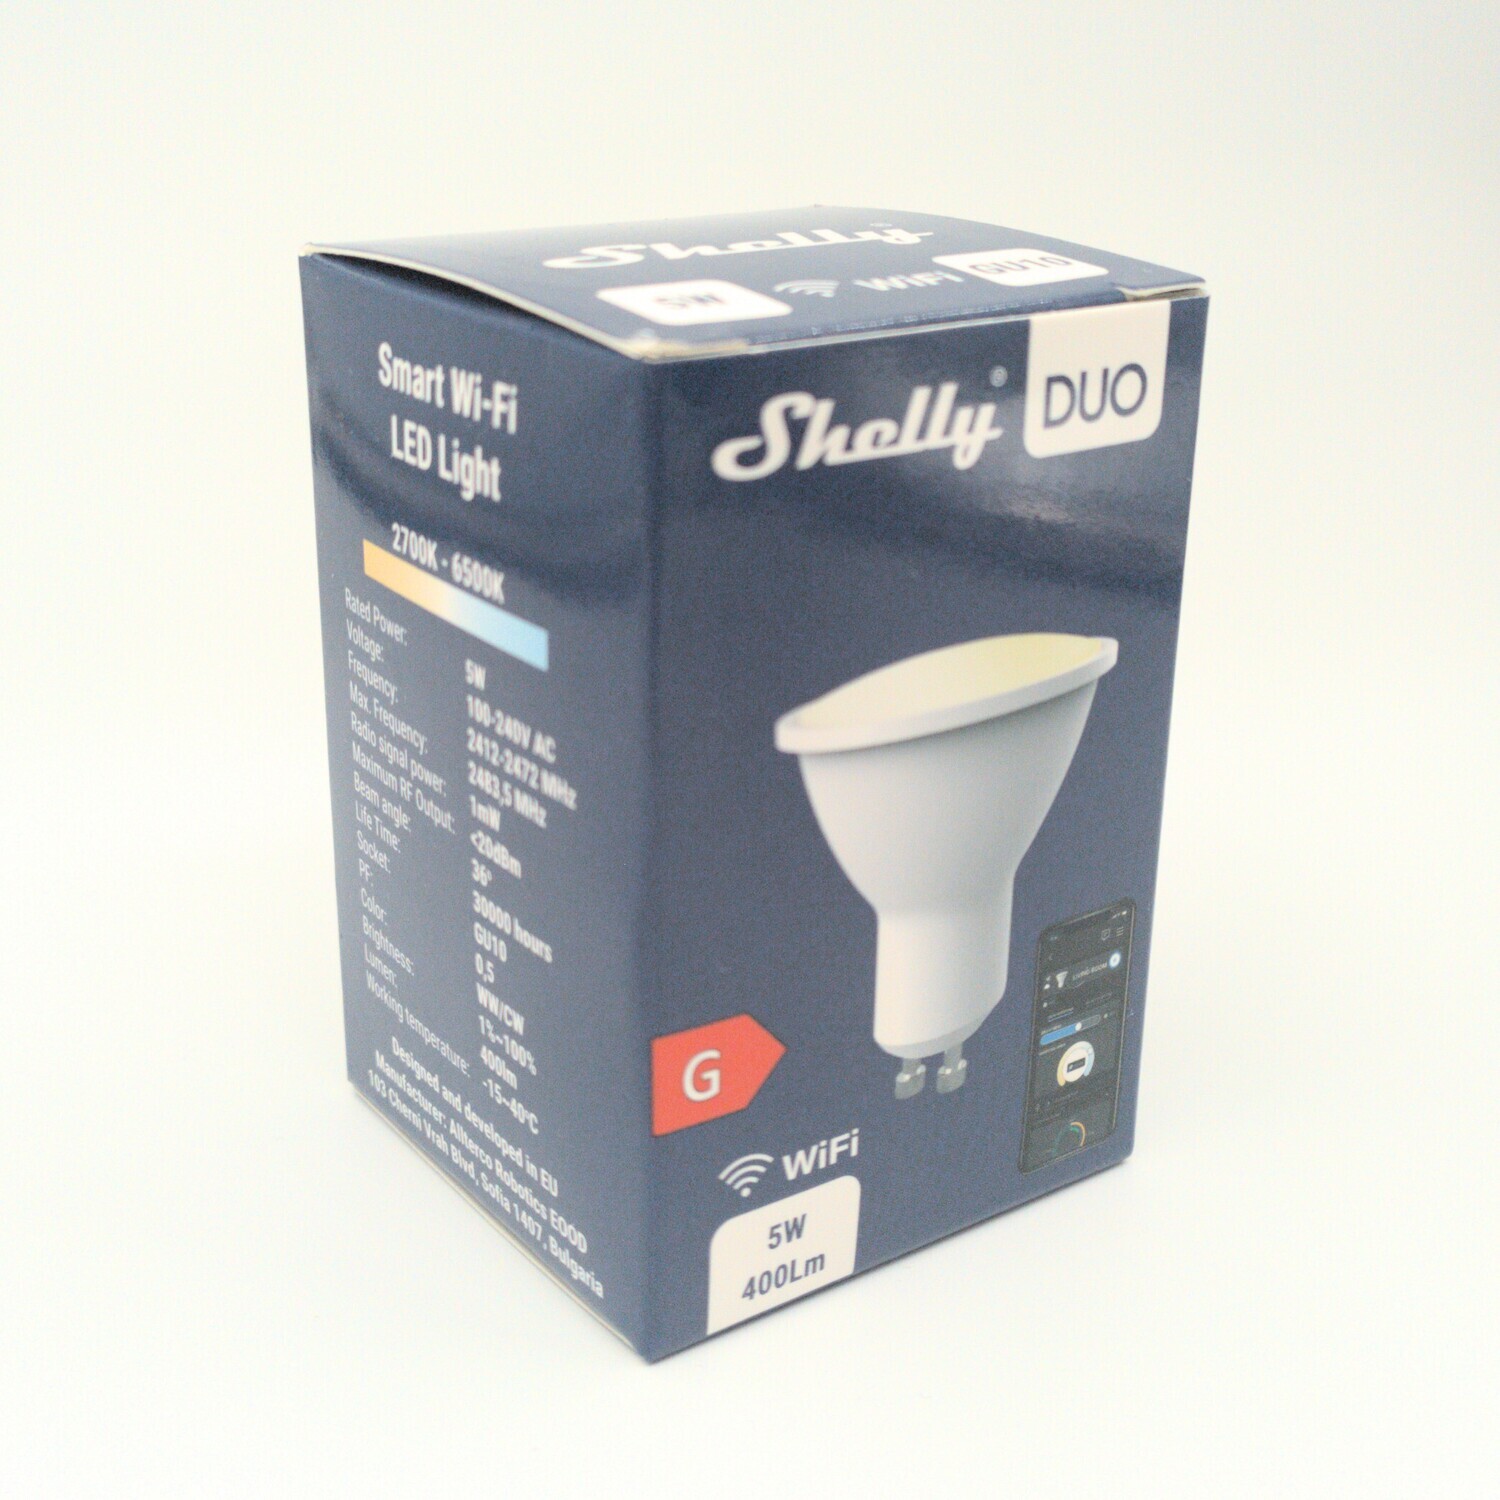 Shelly Duo - 5W/400lm/GU10 WiFi-lamppu säädettävällä värilämpötilalla